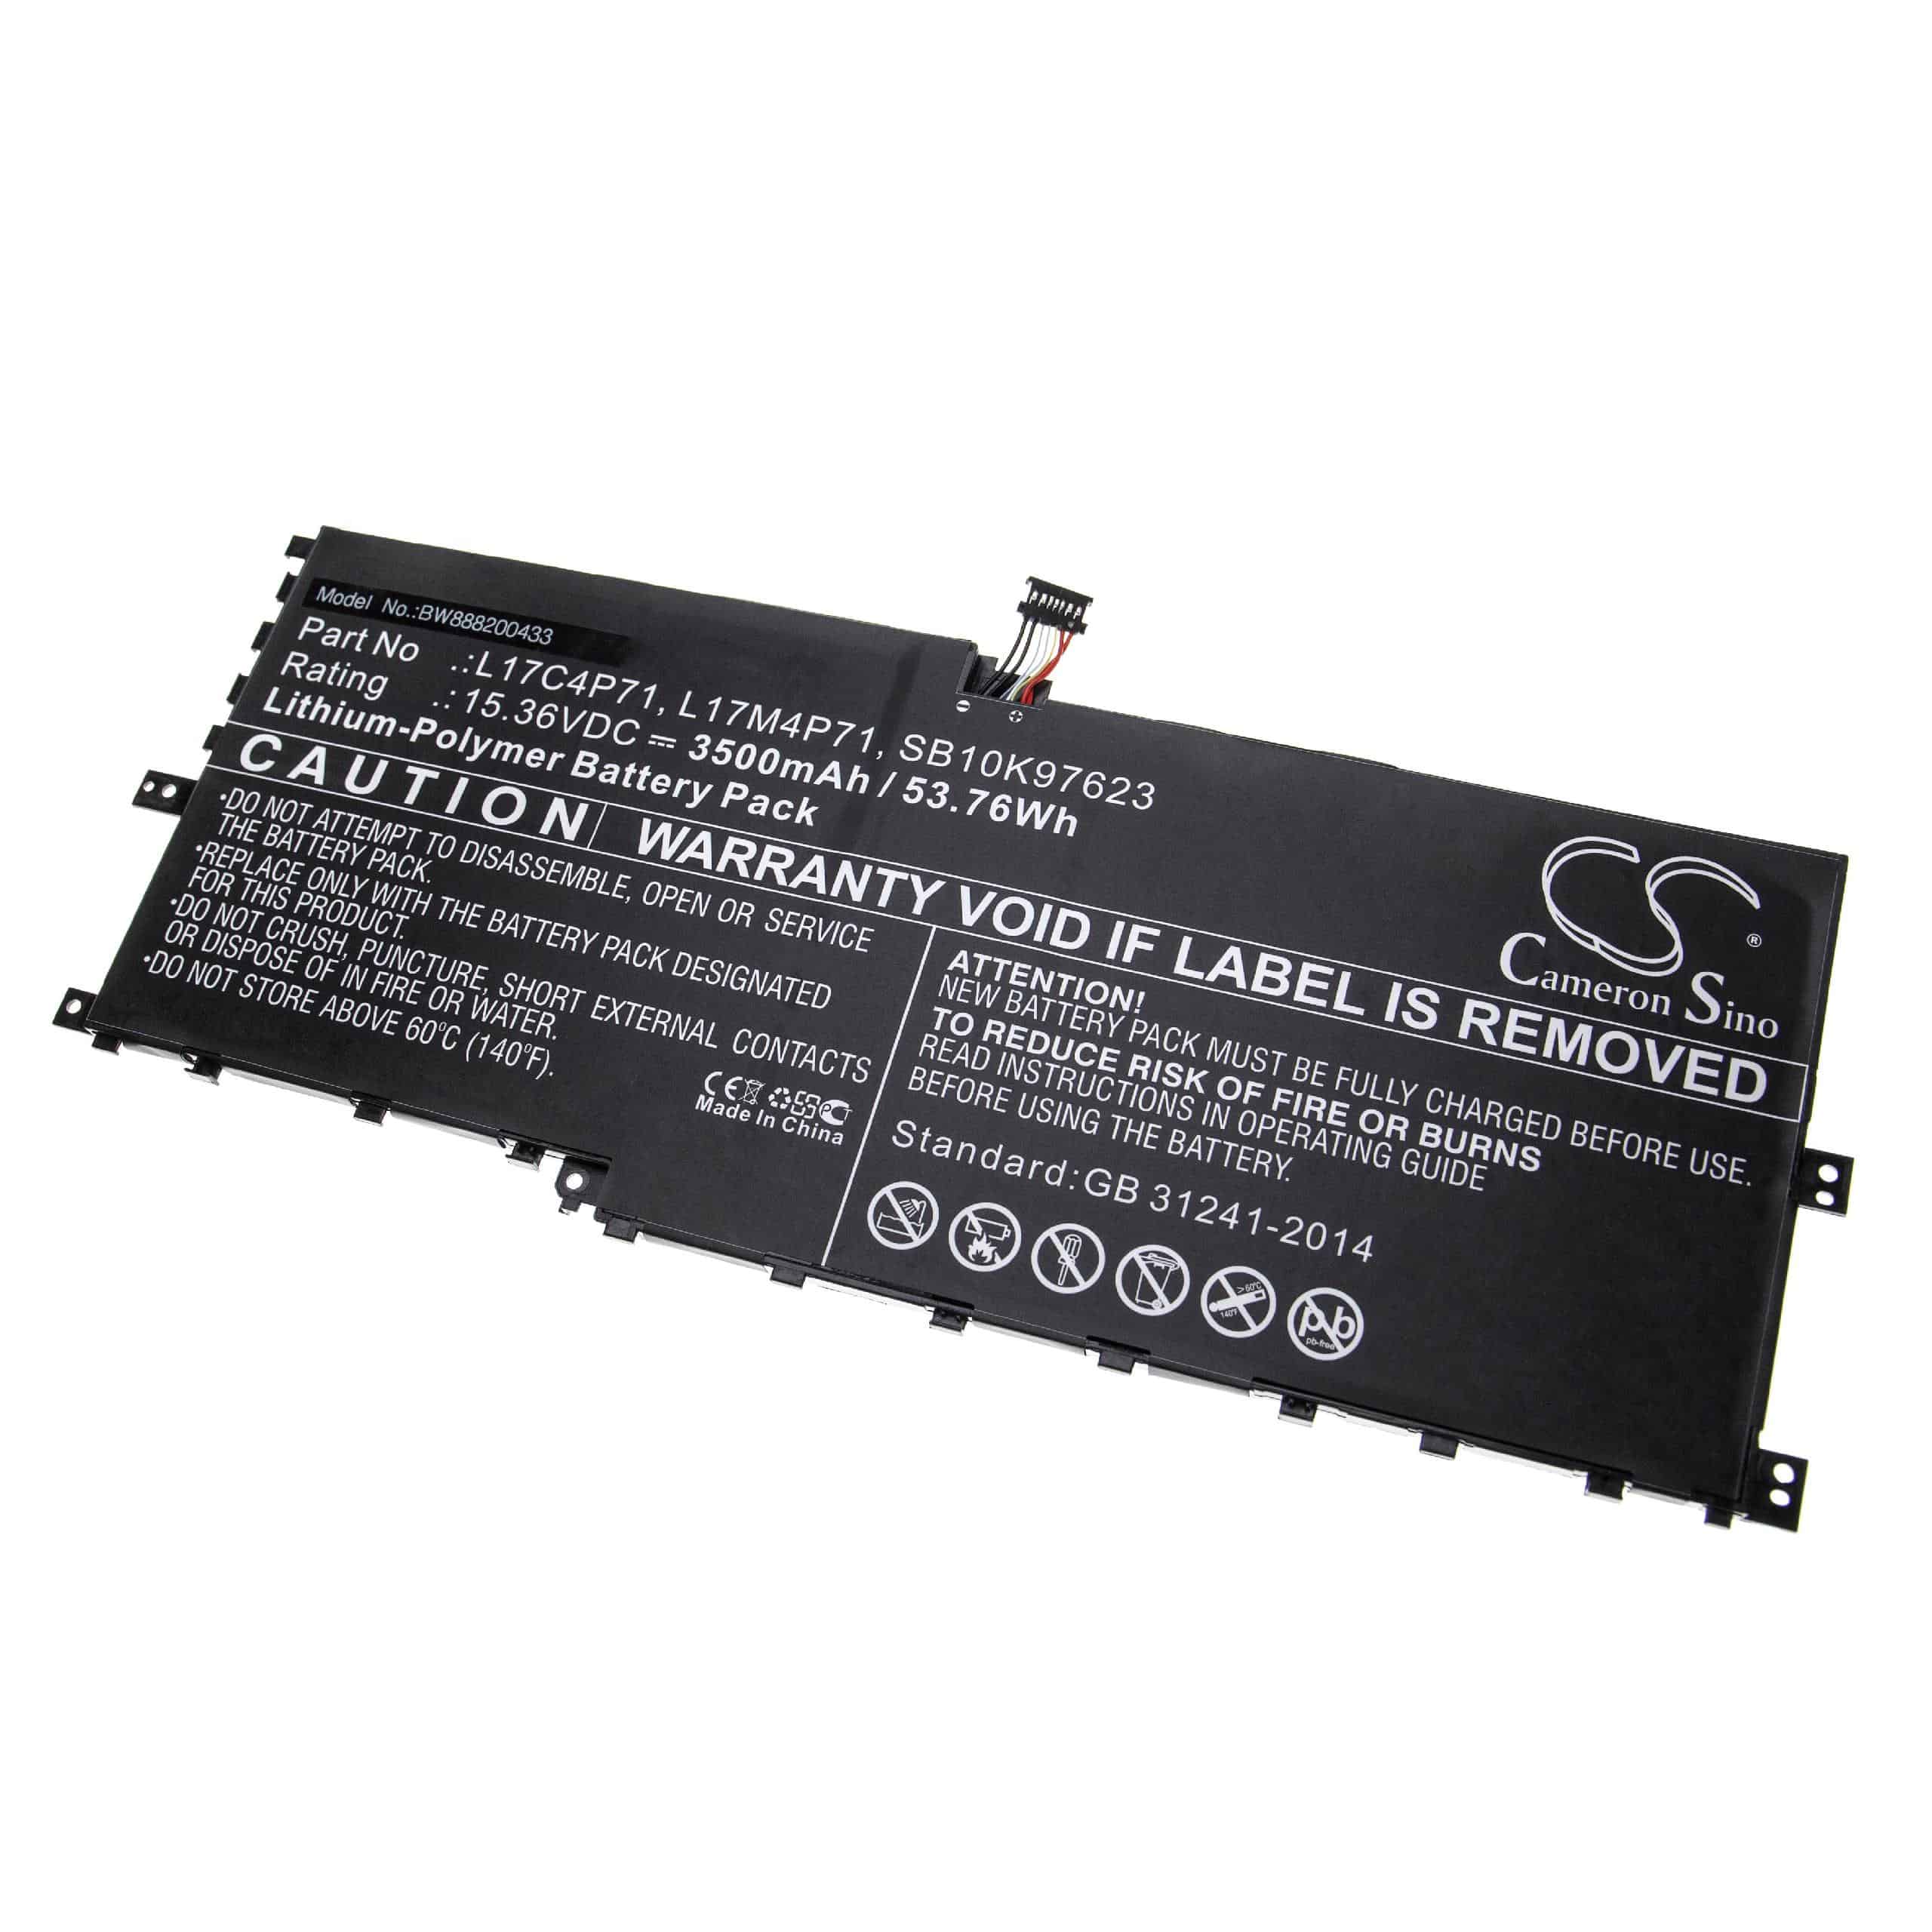 Batería reemplaza Lenovo L17C4P71, L17M4P71, 01AV474, 01AV475 para notebook Lenovo - 3500 mAh 15,36 V Li-poli